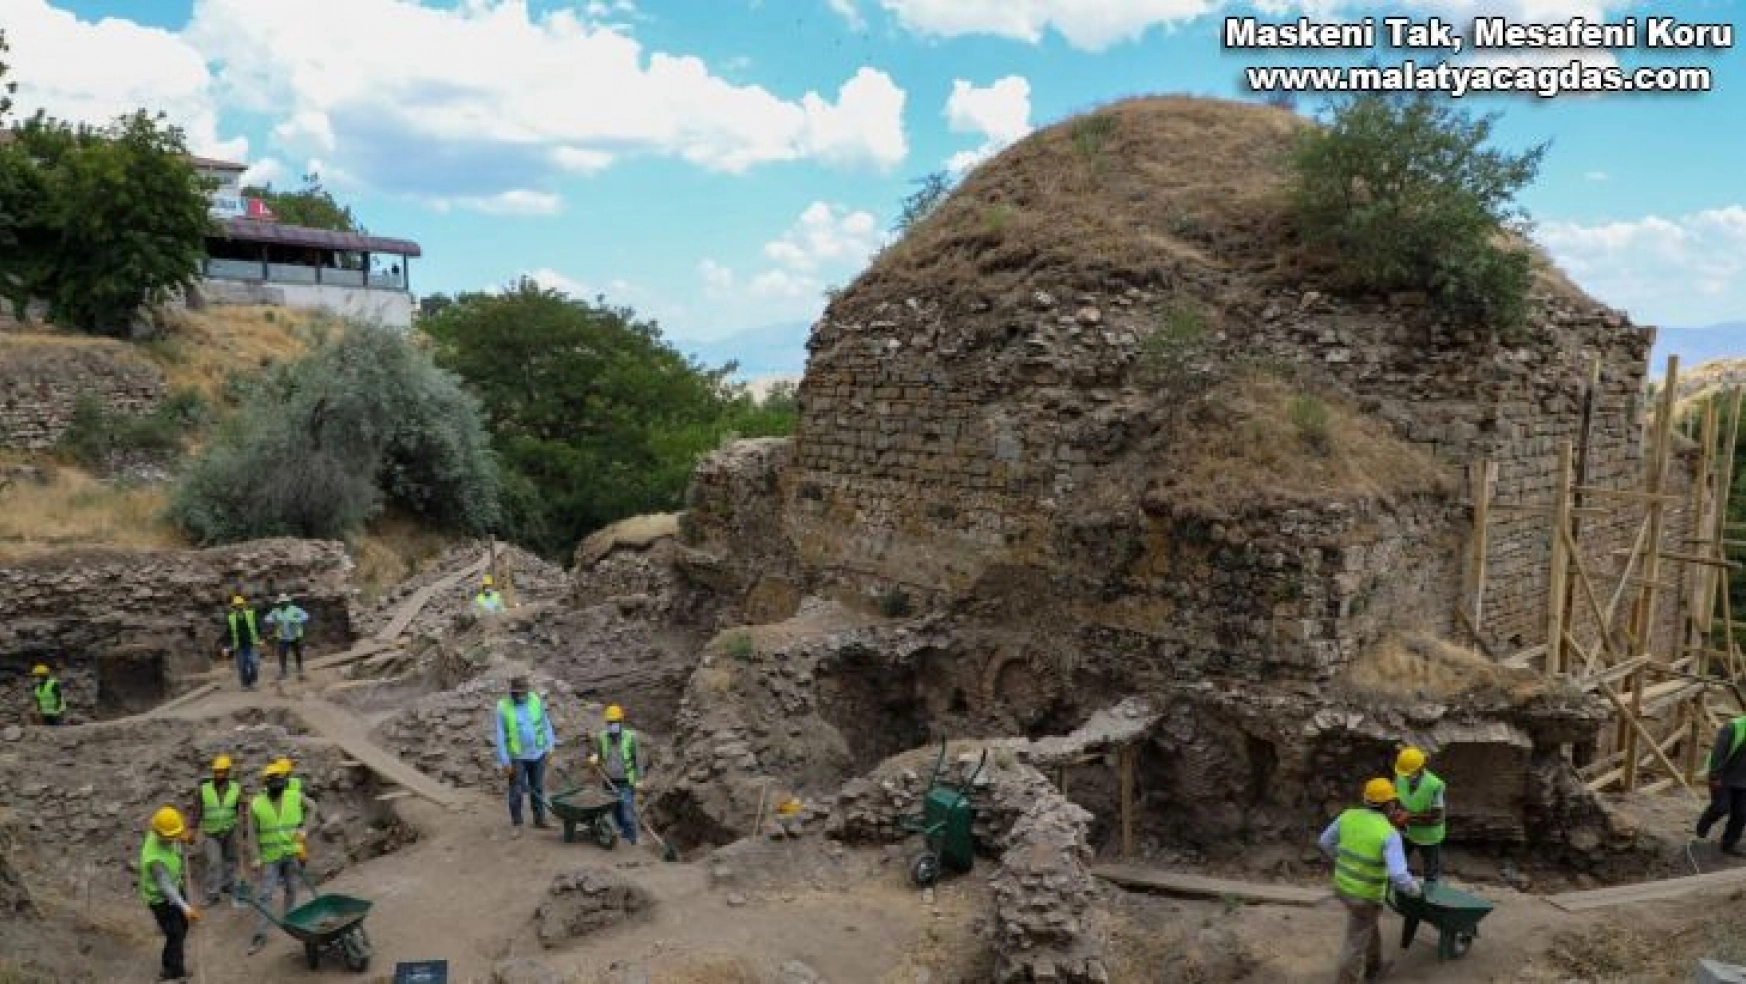 Elazığ'da tarihi hamamda restorasyon çalışmaları başladı